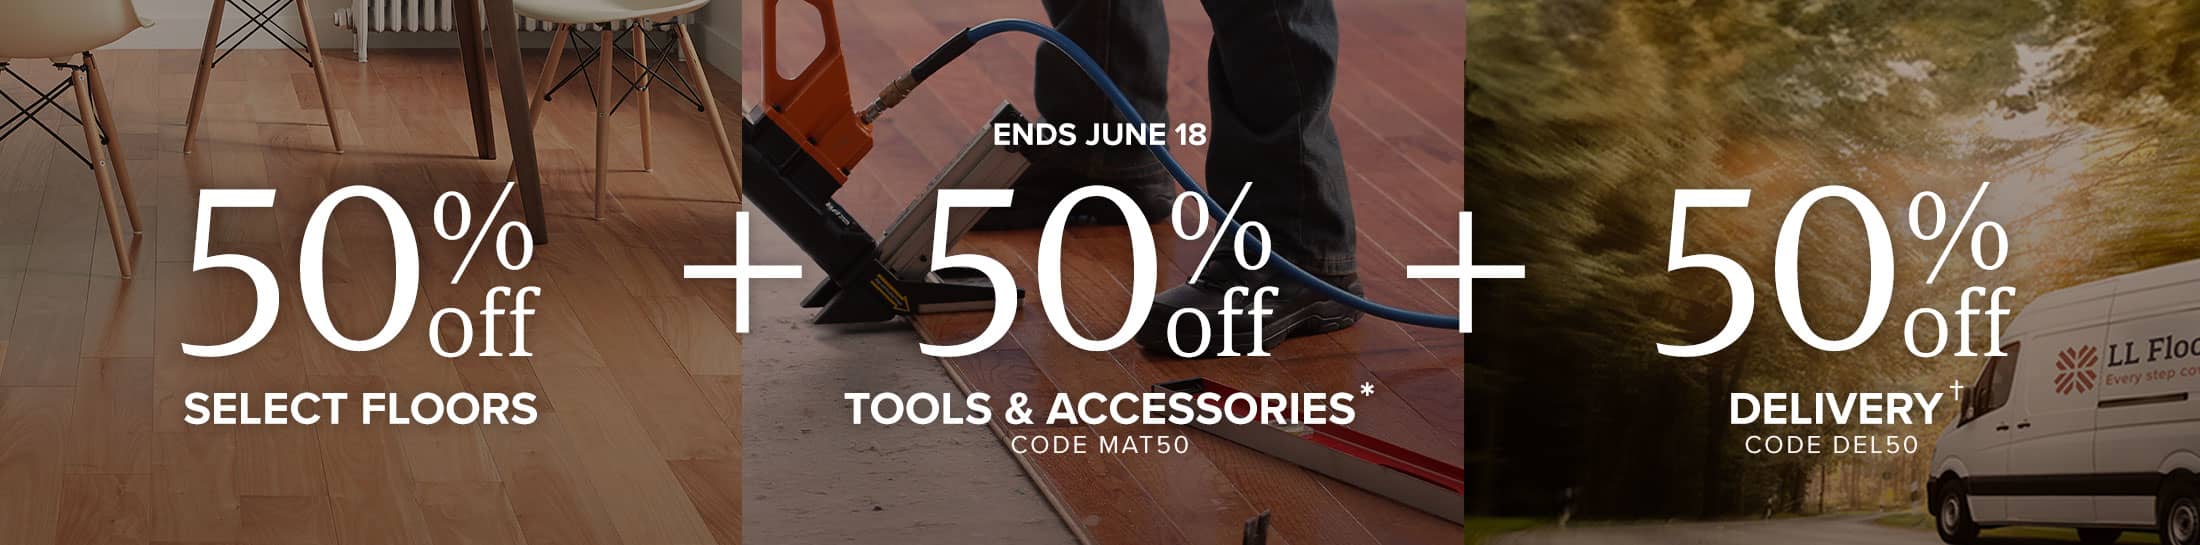 ends june 18 50 percent off select floors plus 50 percent off tools and accessories code mat50 plus 50 percent off delivery code del50